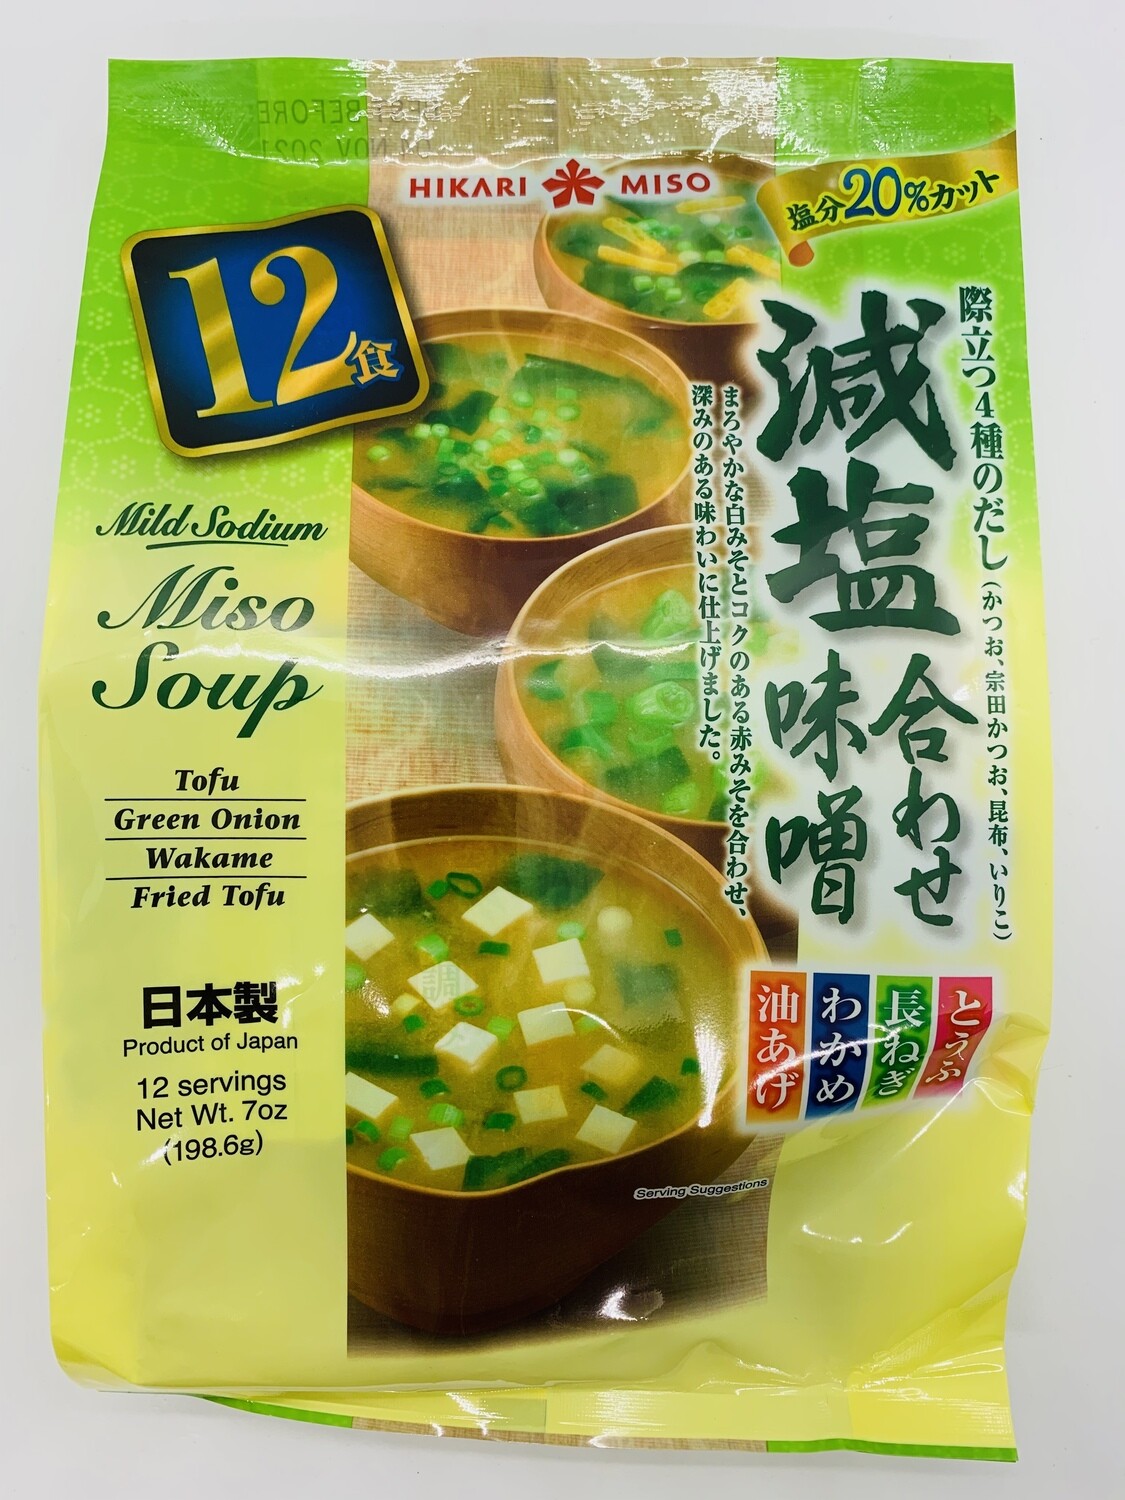 HIKARI Instant Miso Soup Mild Sodium 12